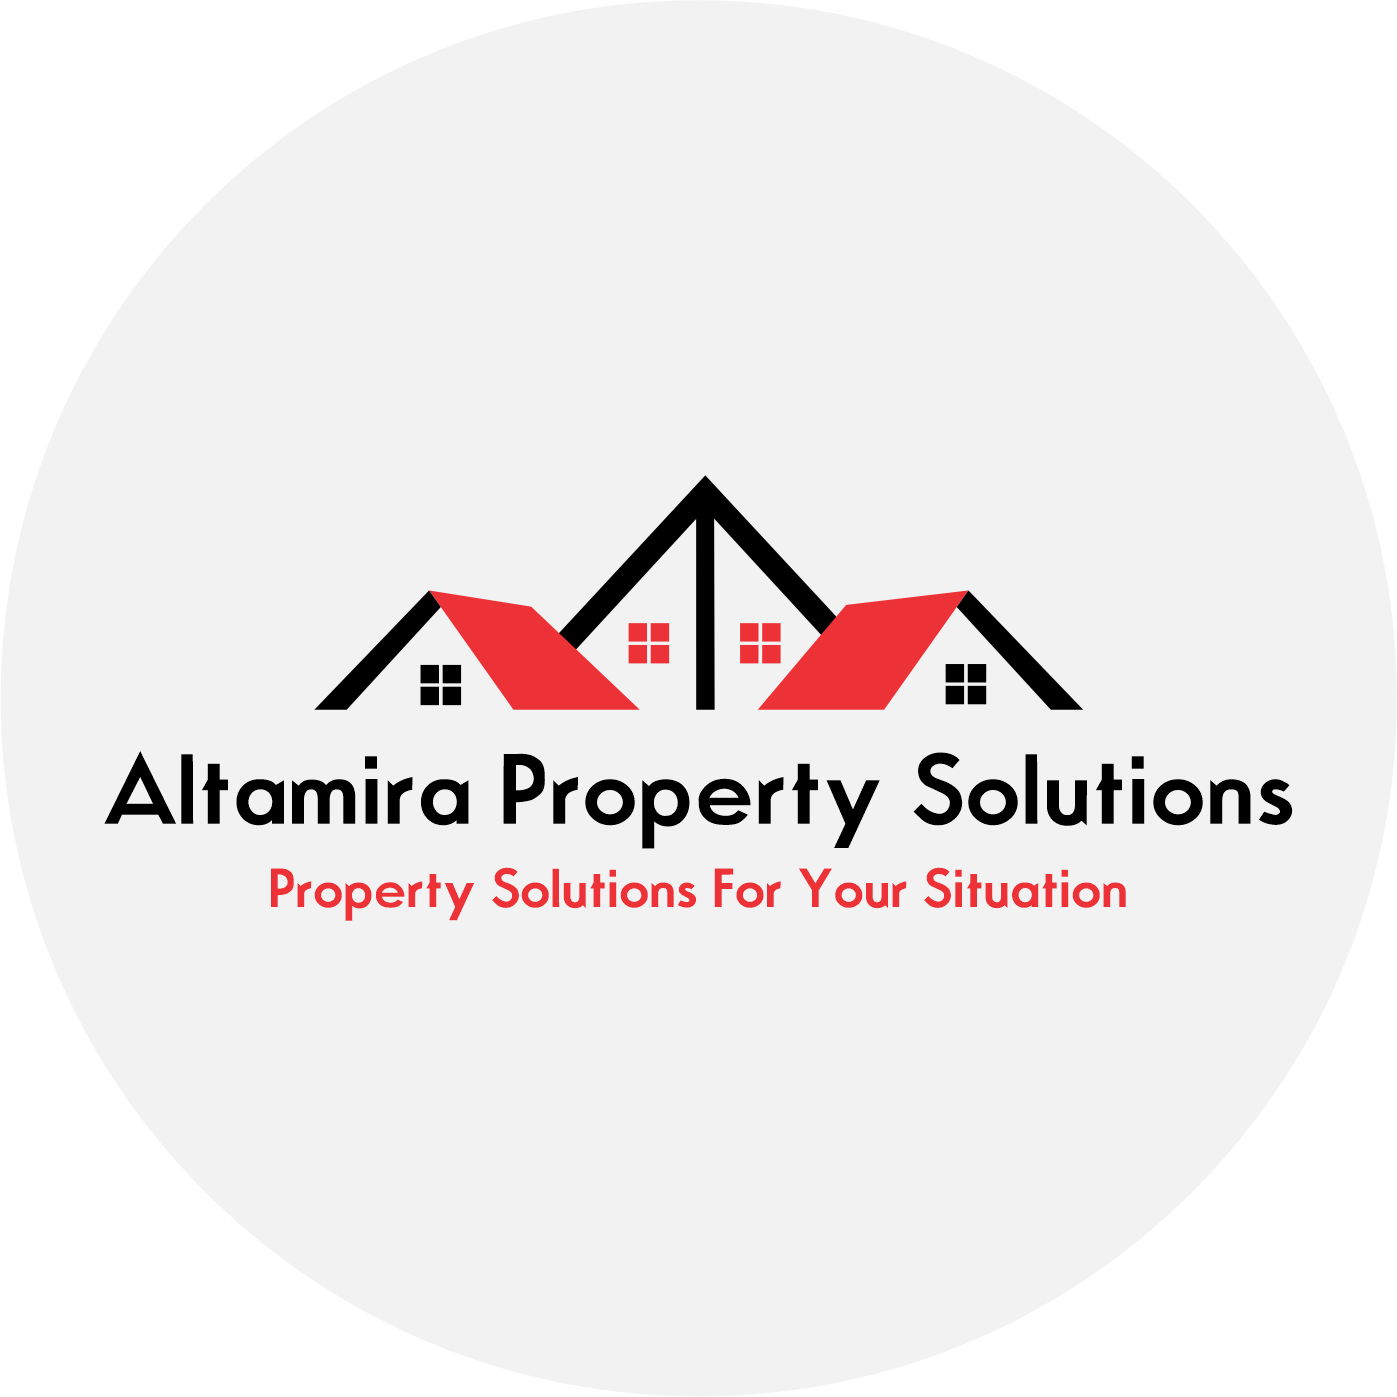 Altamira Property Solutions, LLC